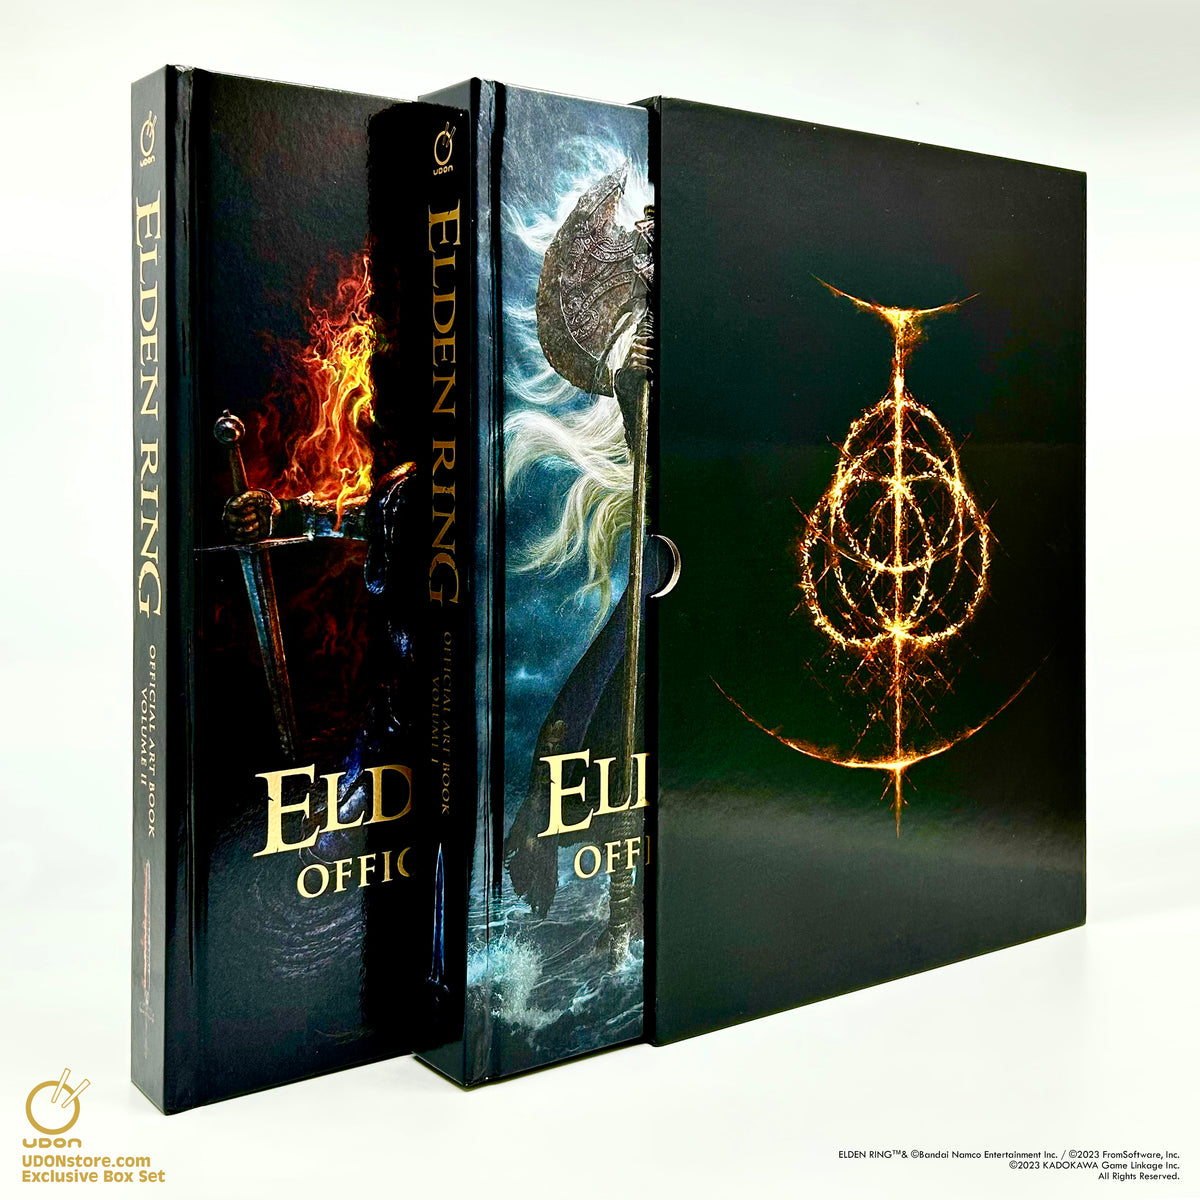 Behrial II — Elden Ring: Official Artbook